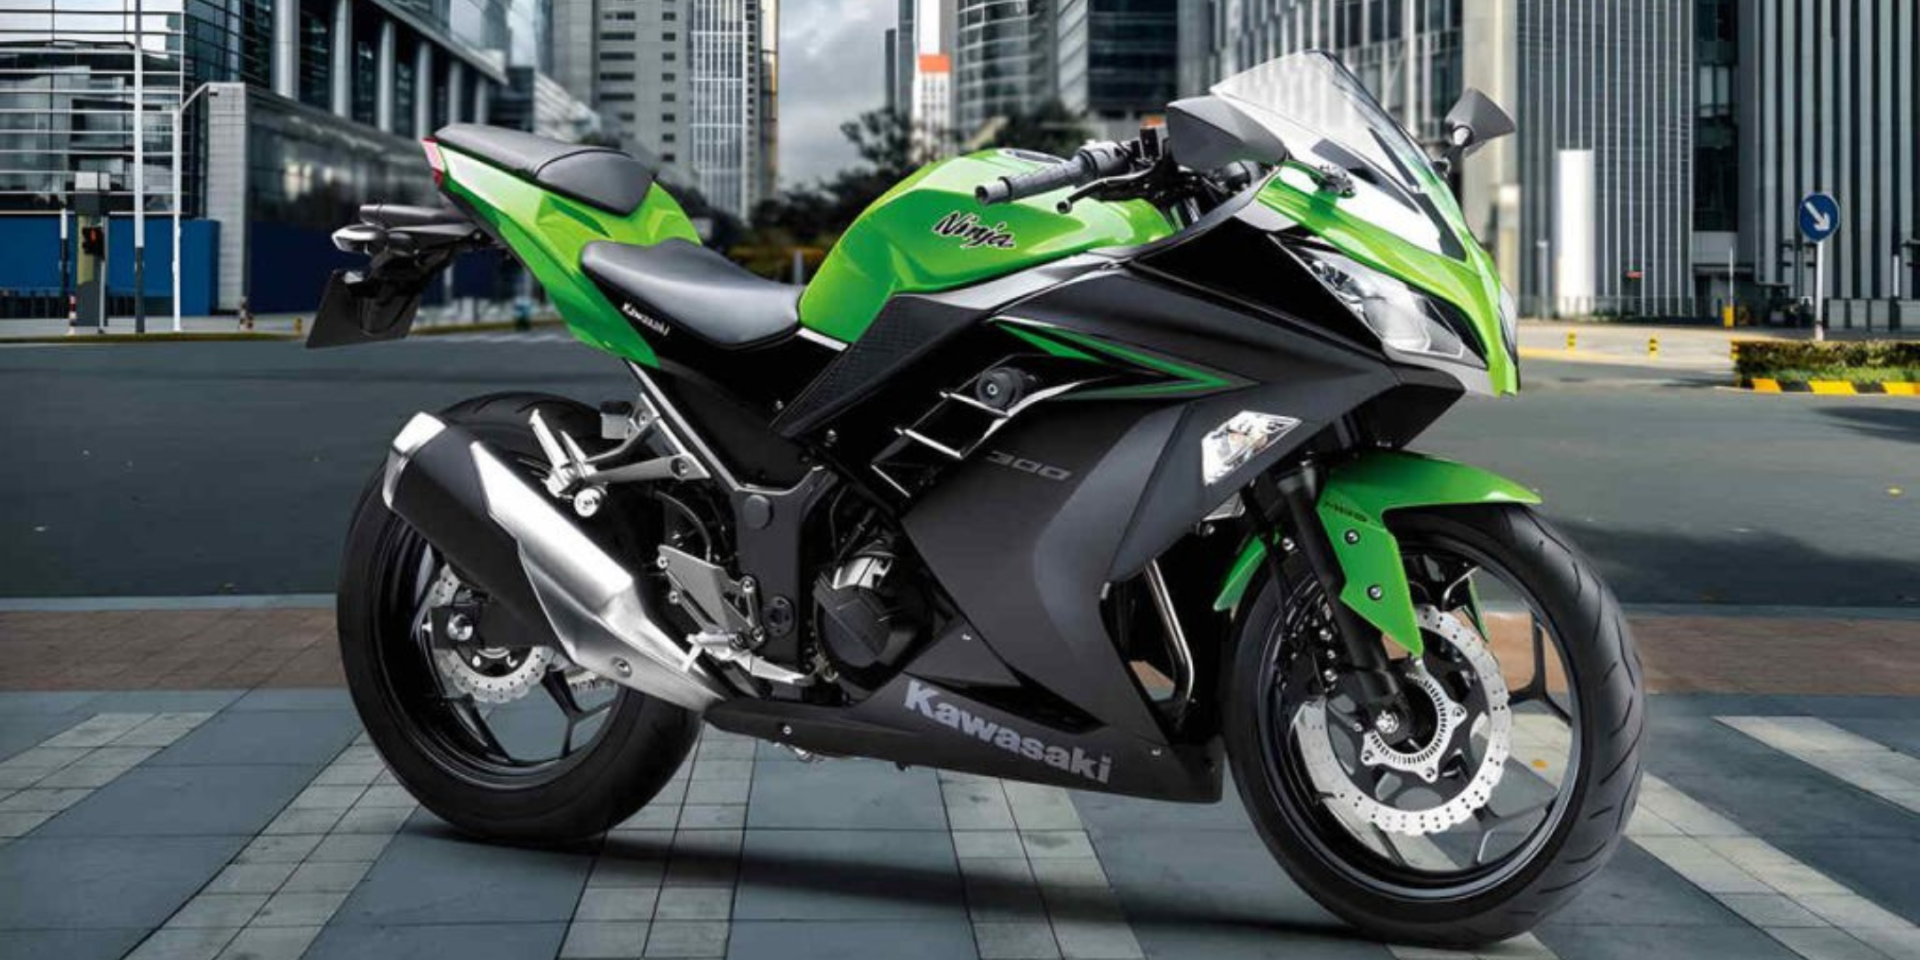 Motos esportivas baratas: top6 usadas por até R$ 35 mil - Motonline